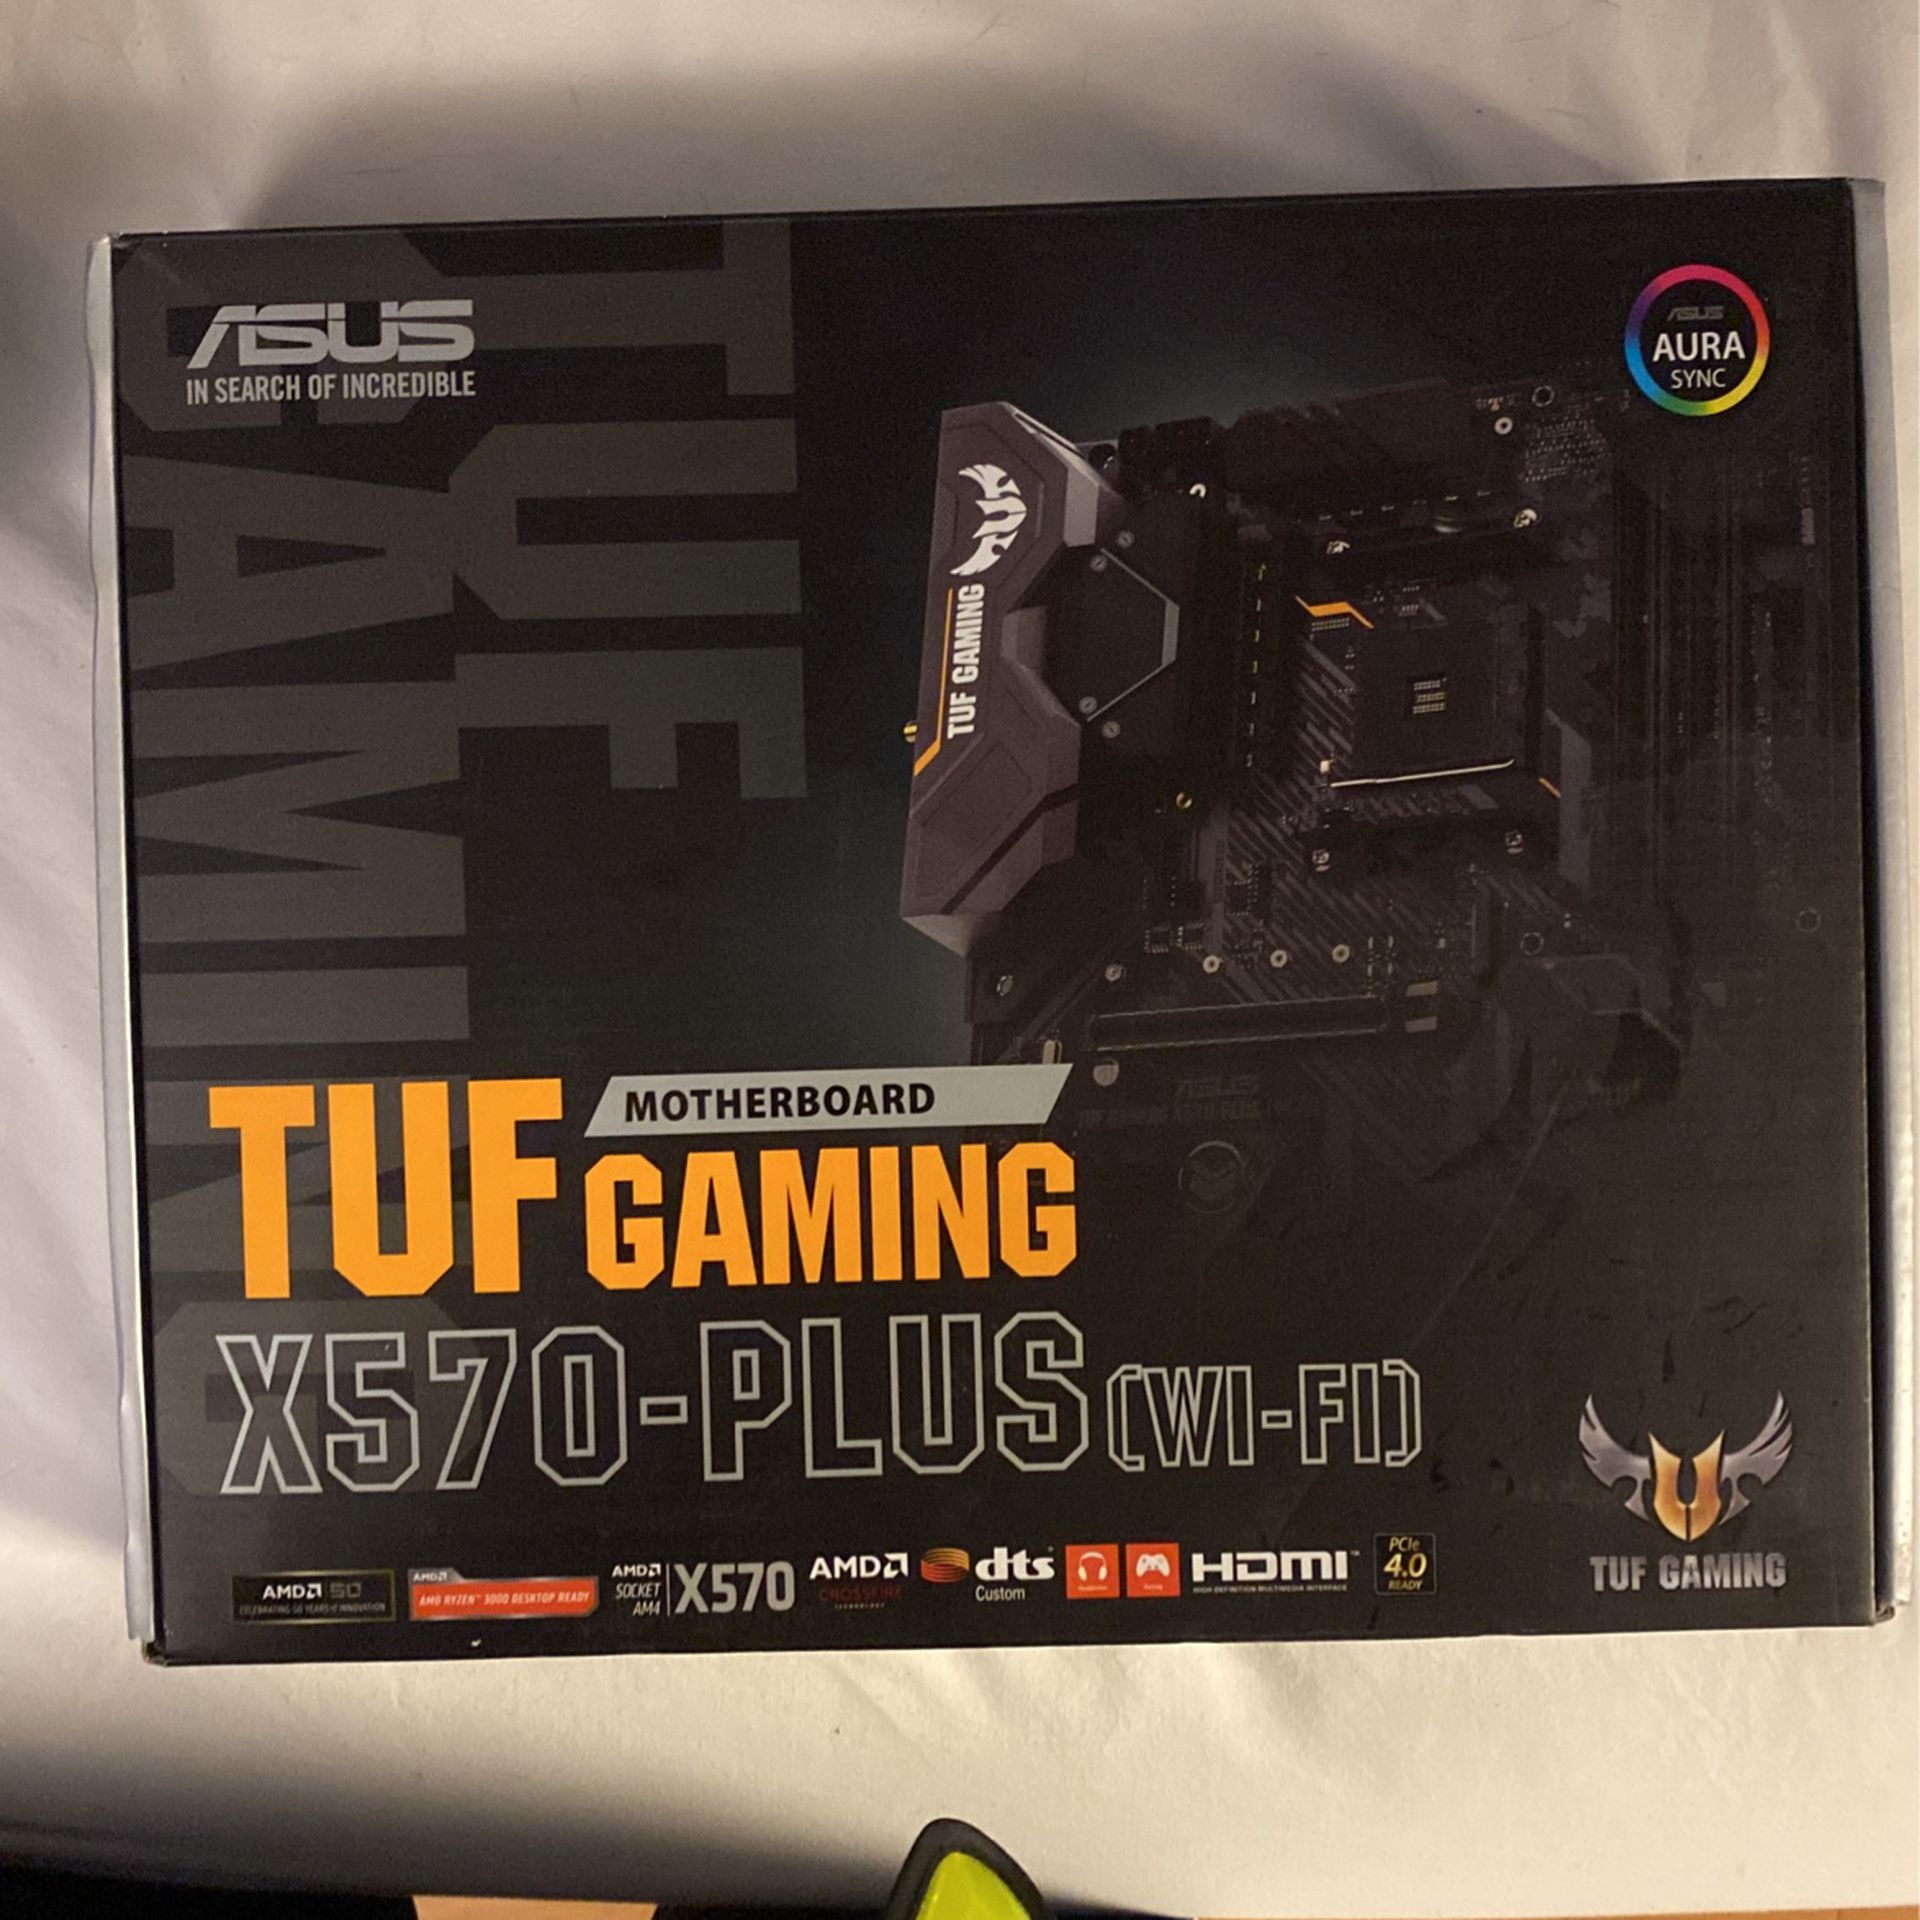 TUF Gaming motherboard X570-PLUS [wi-fi]